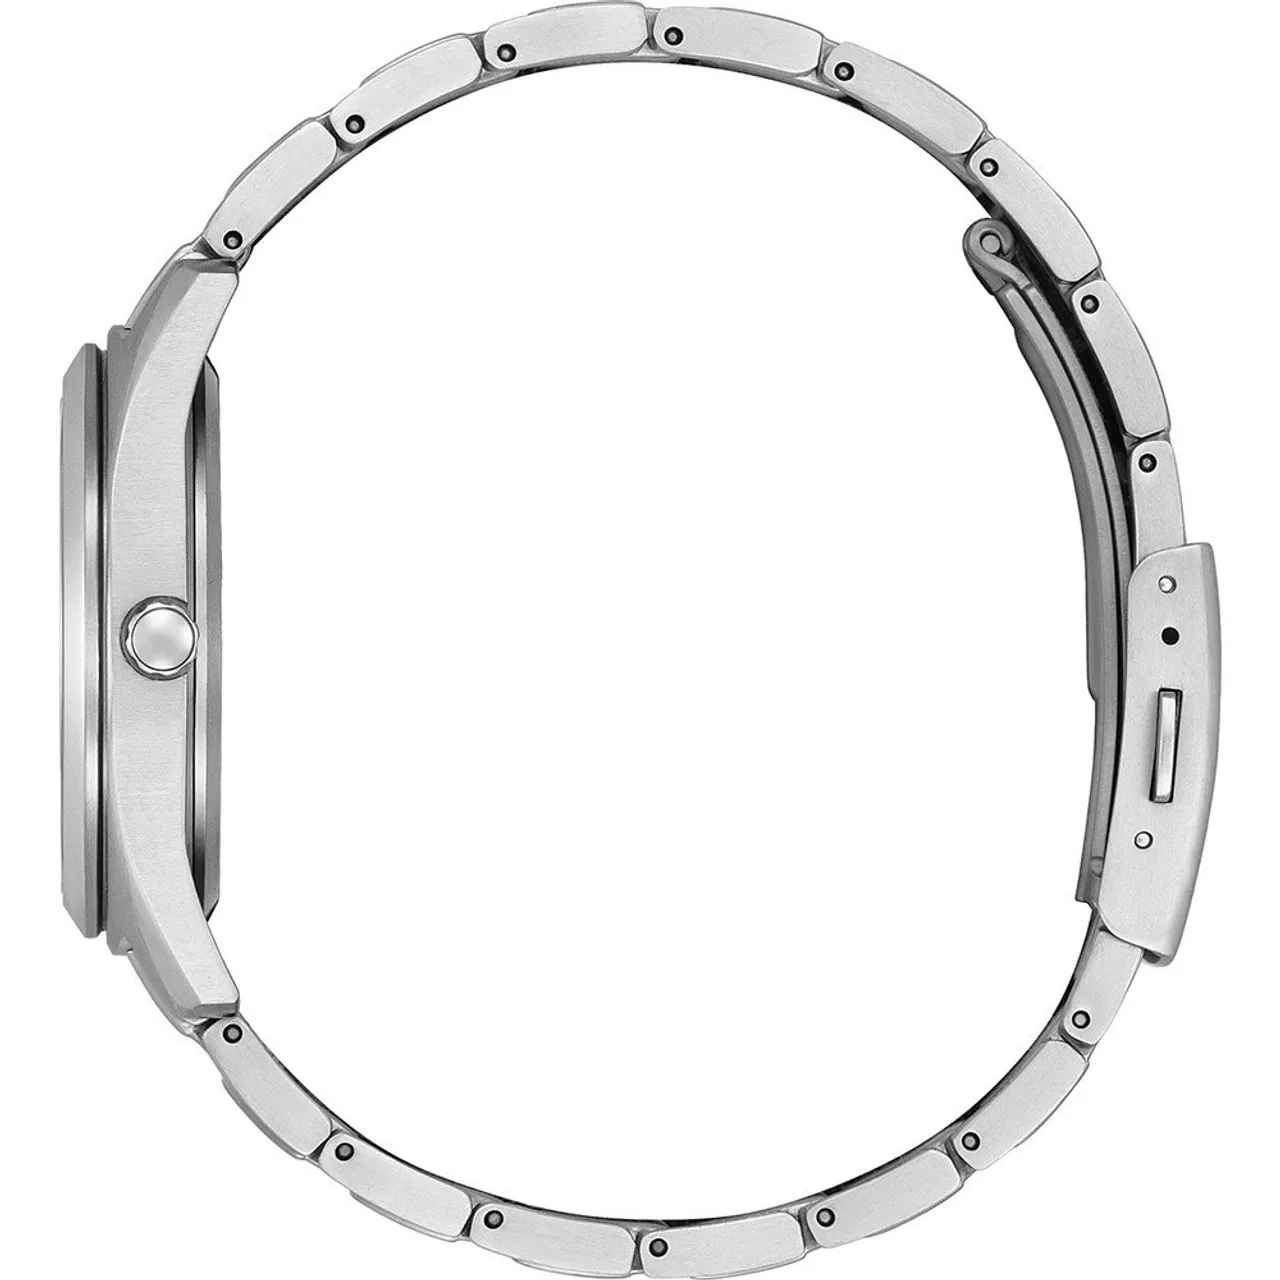 Citizen Super Titanium FE6151-82L Horloge